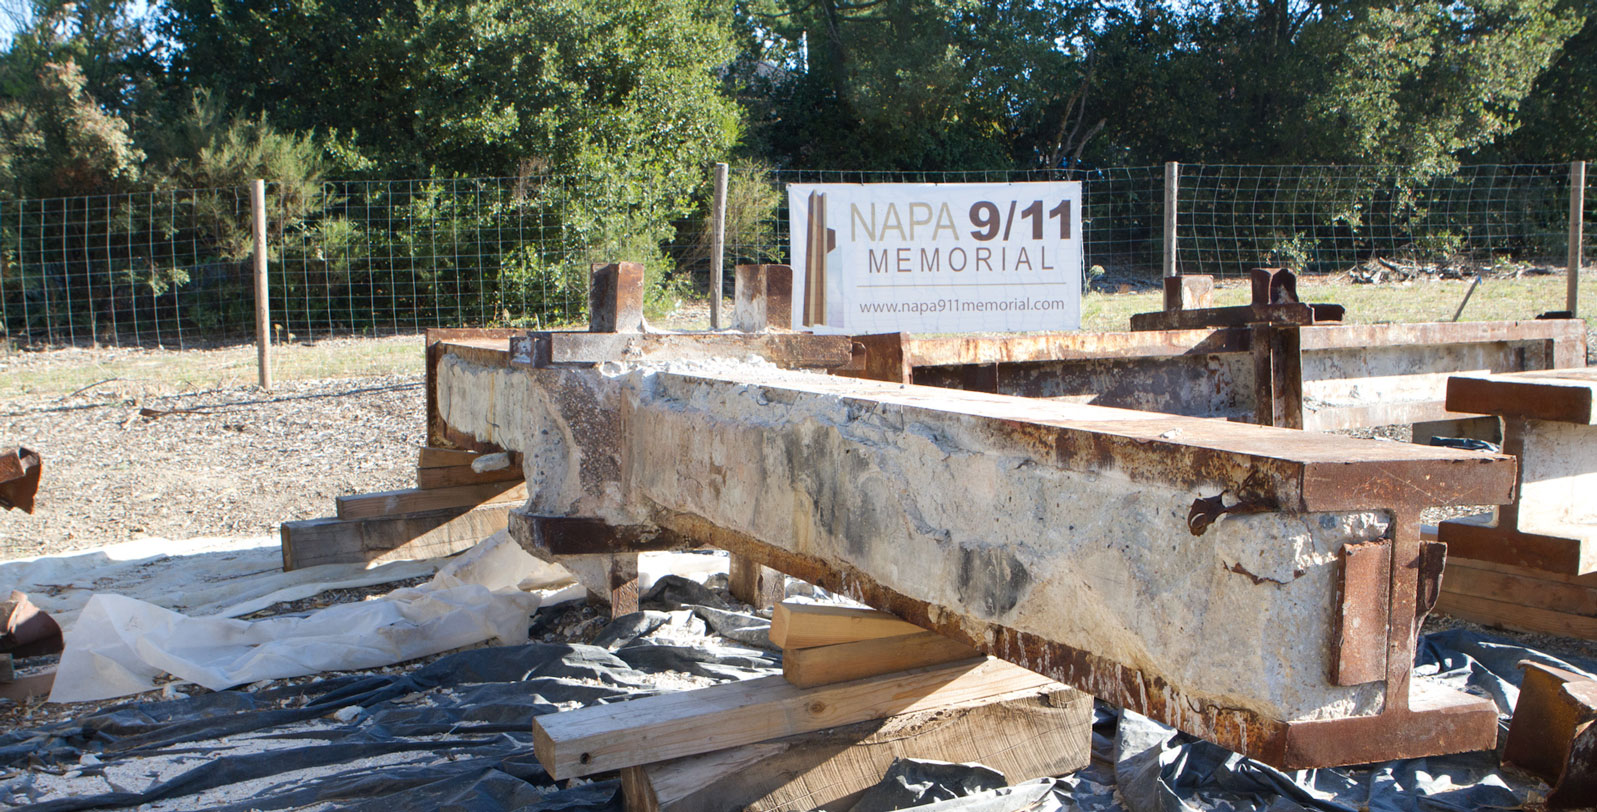 Napa 9/11 Memorial raw steel